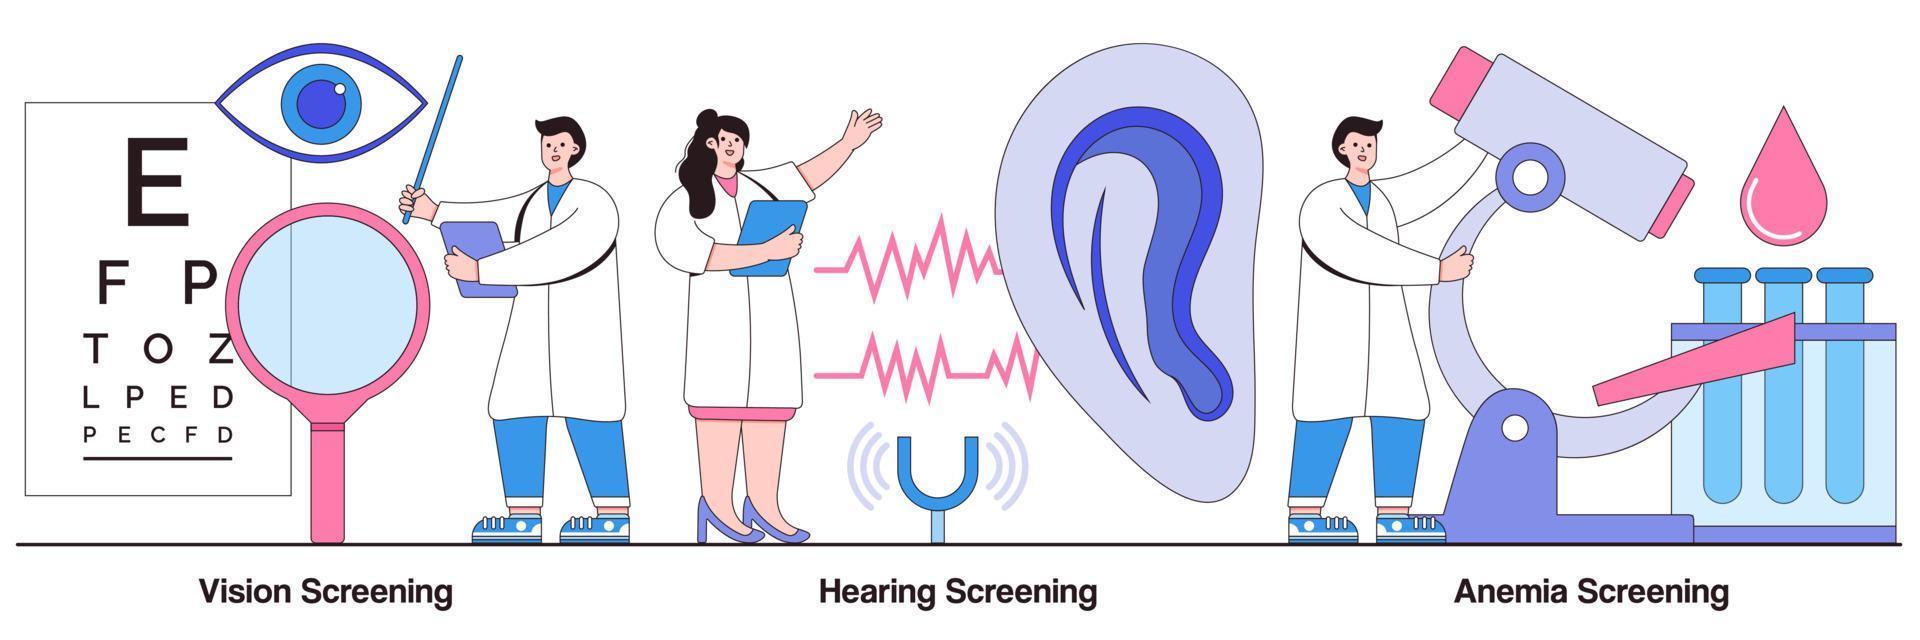 Pacchetto illustrato per screening della vista, dell'udito e dell'anemia vettore